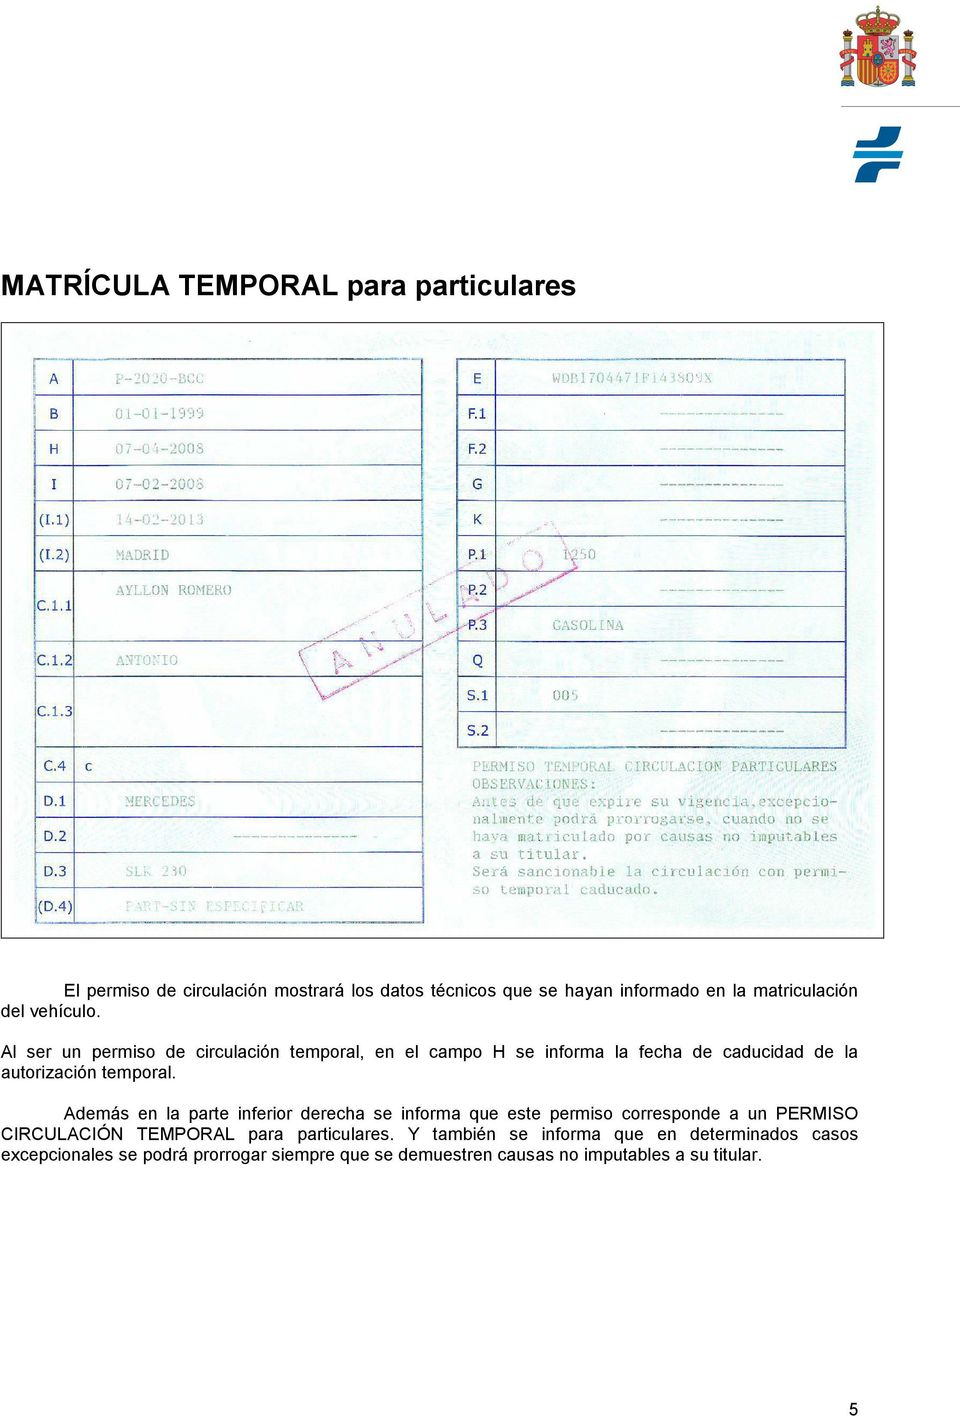 Además en la parte inferior derecha se informa que este permiso corresponde a un PERMISO CIRCULACIÓN TEMPORAL para particulares.